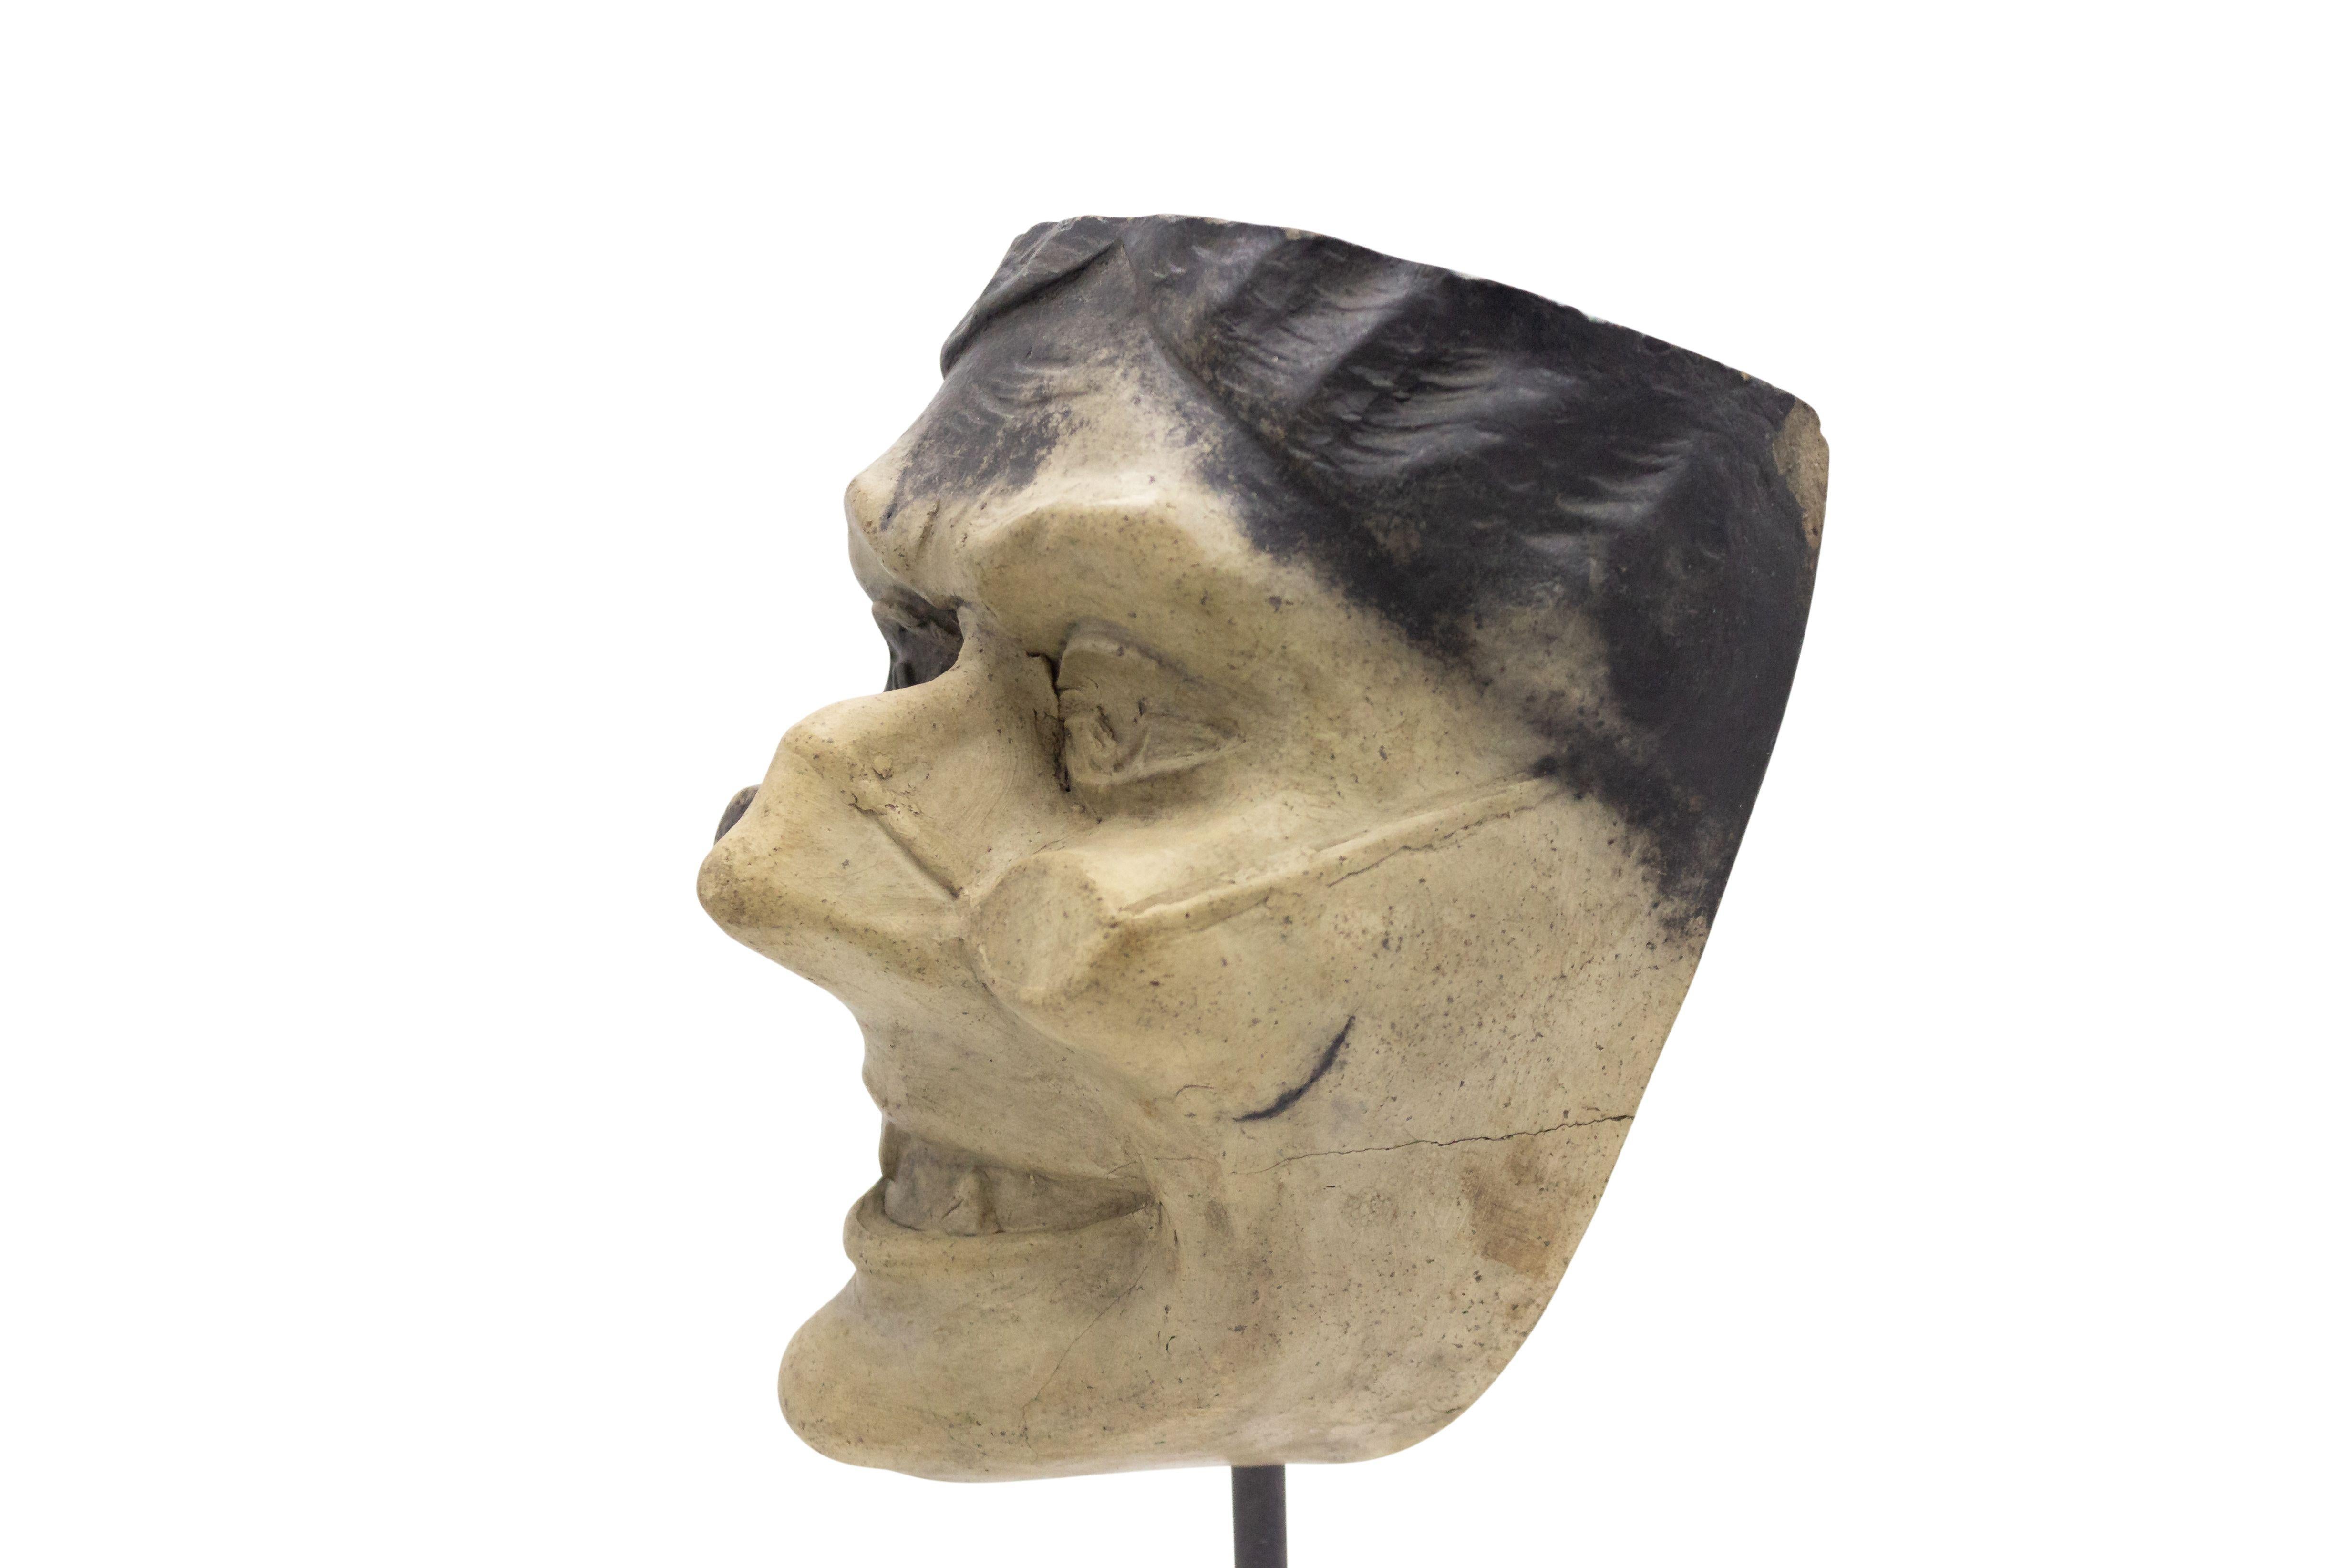 Kontinentaldeutsche (spätes 19. Jh.) Terrakotta-Maskenform eines lachenden Groteskengesichts mit Brille und spitzen Zähnen auf einem quadratischen schwarzen Marmorsockel (Teil einer 39-teiligen Sammlung).
     